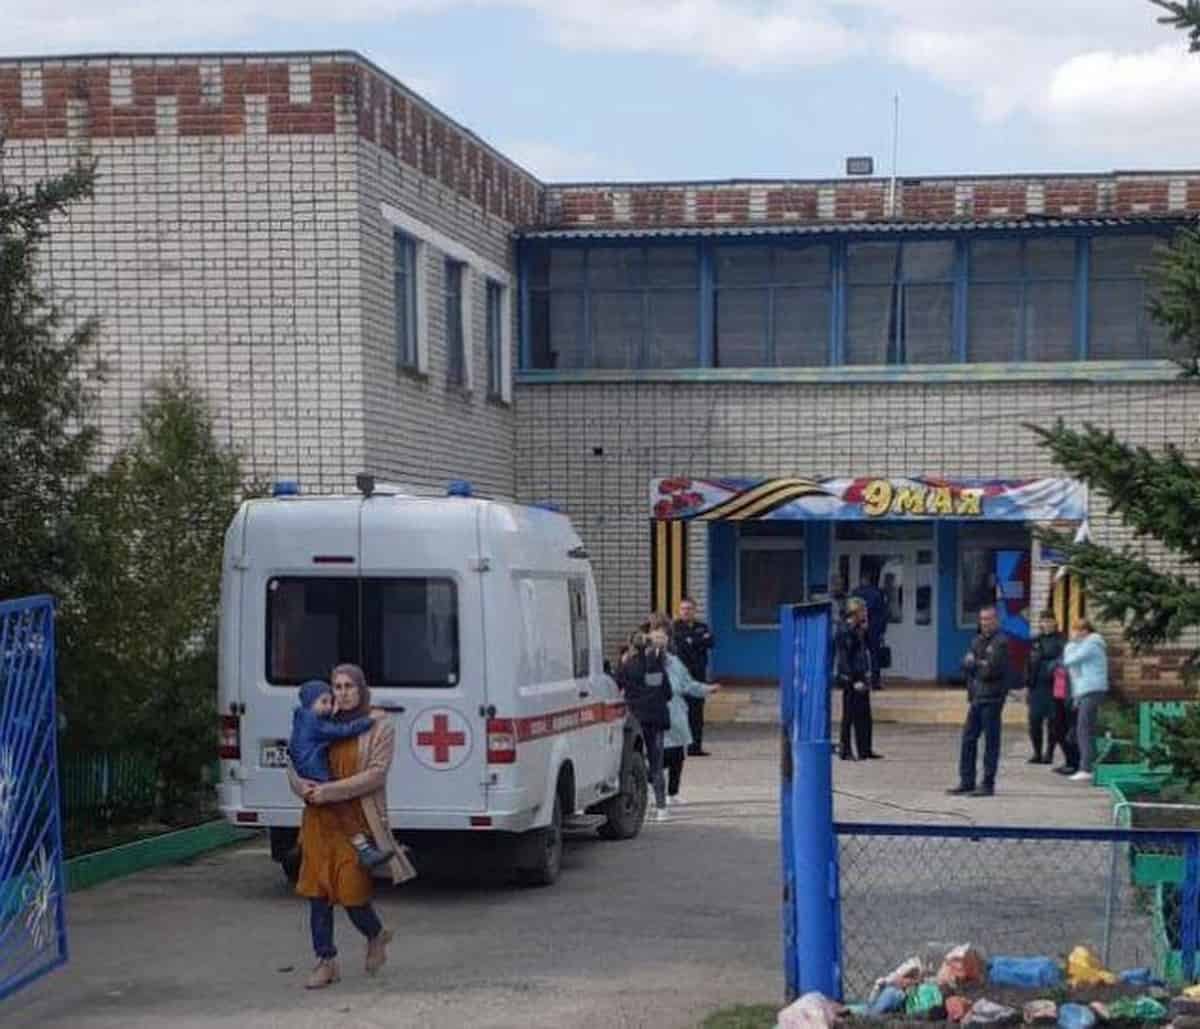  Incident armat la o grădiniţă din Rusia soldat cu 4 morţi, inclusiv 2 copii